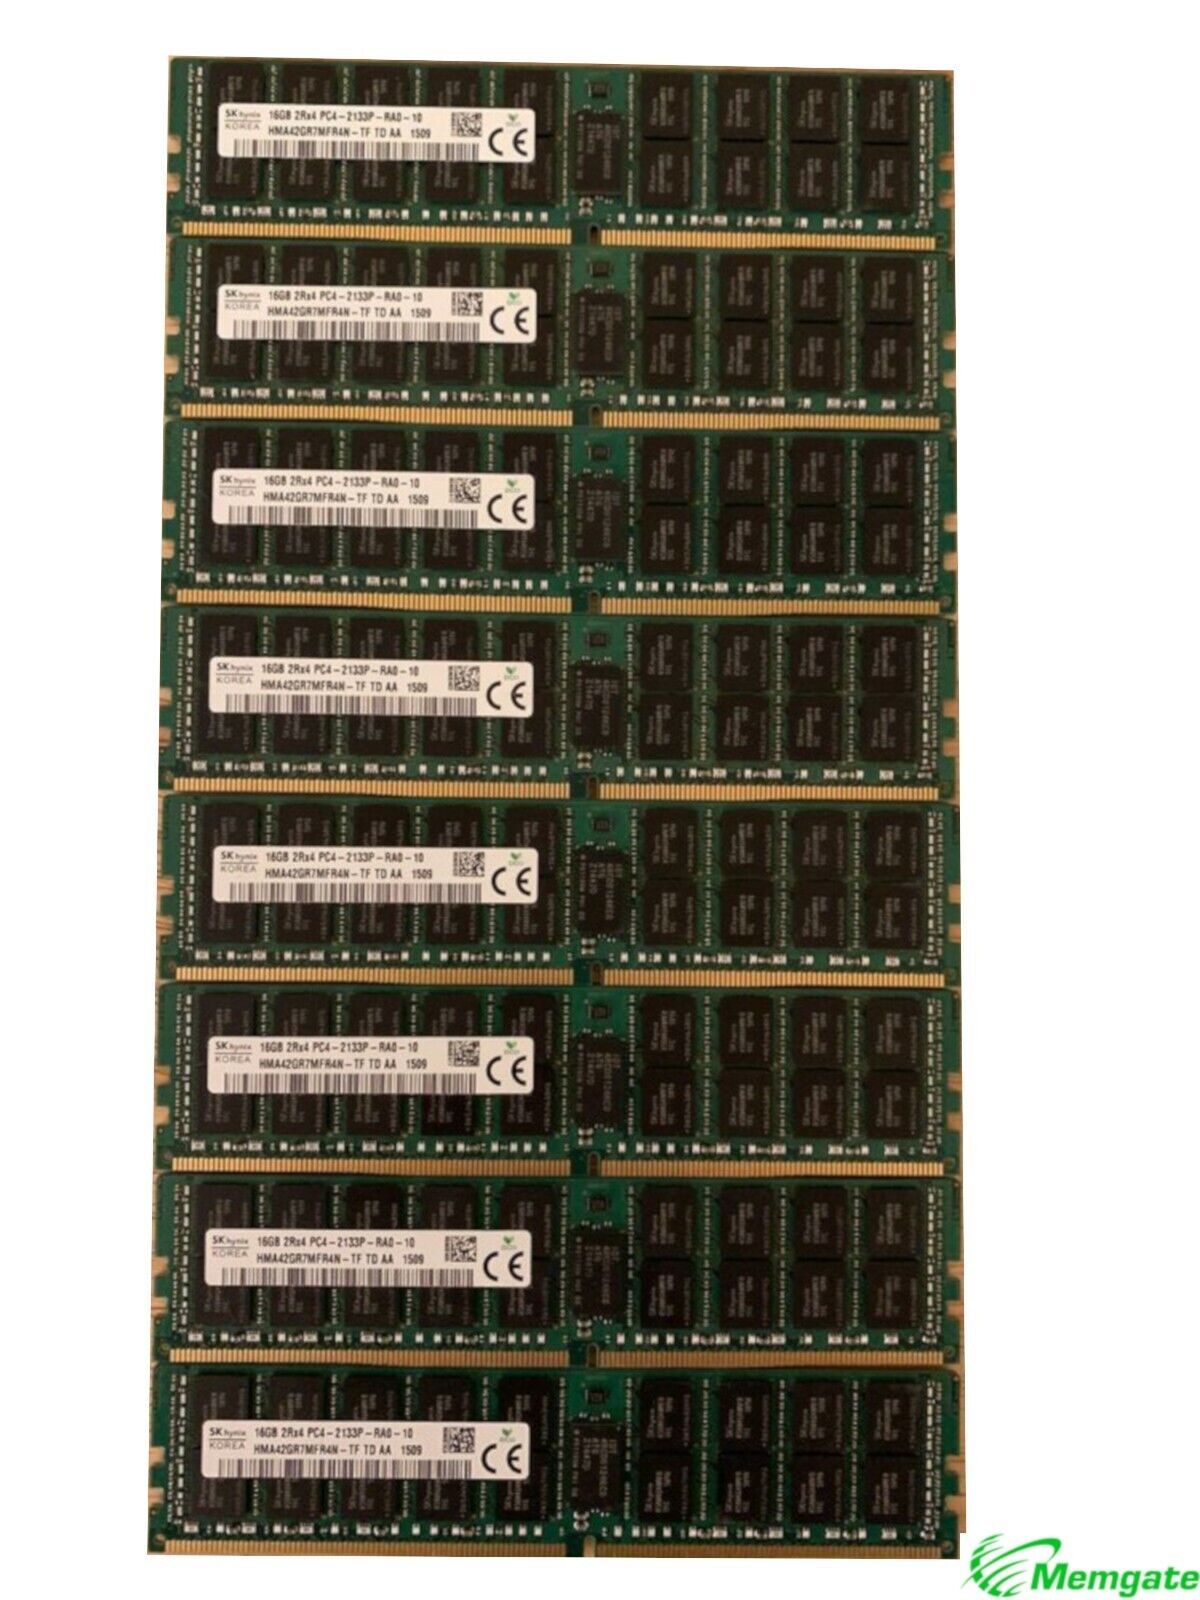 256GB (16x16GB) PC4-17000P-R DDR4 2133P ECC RDIMM Memory for Dell PowerEdge R630